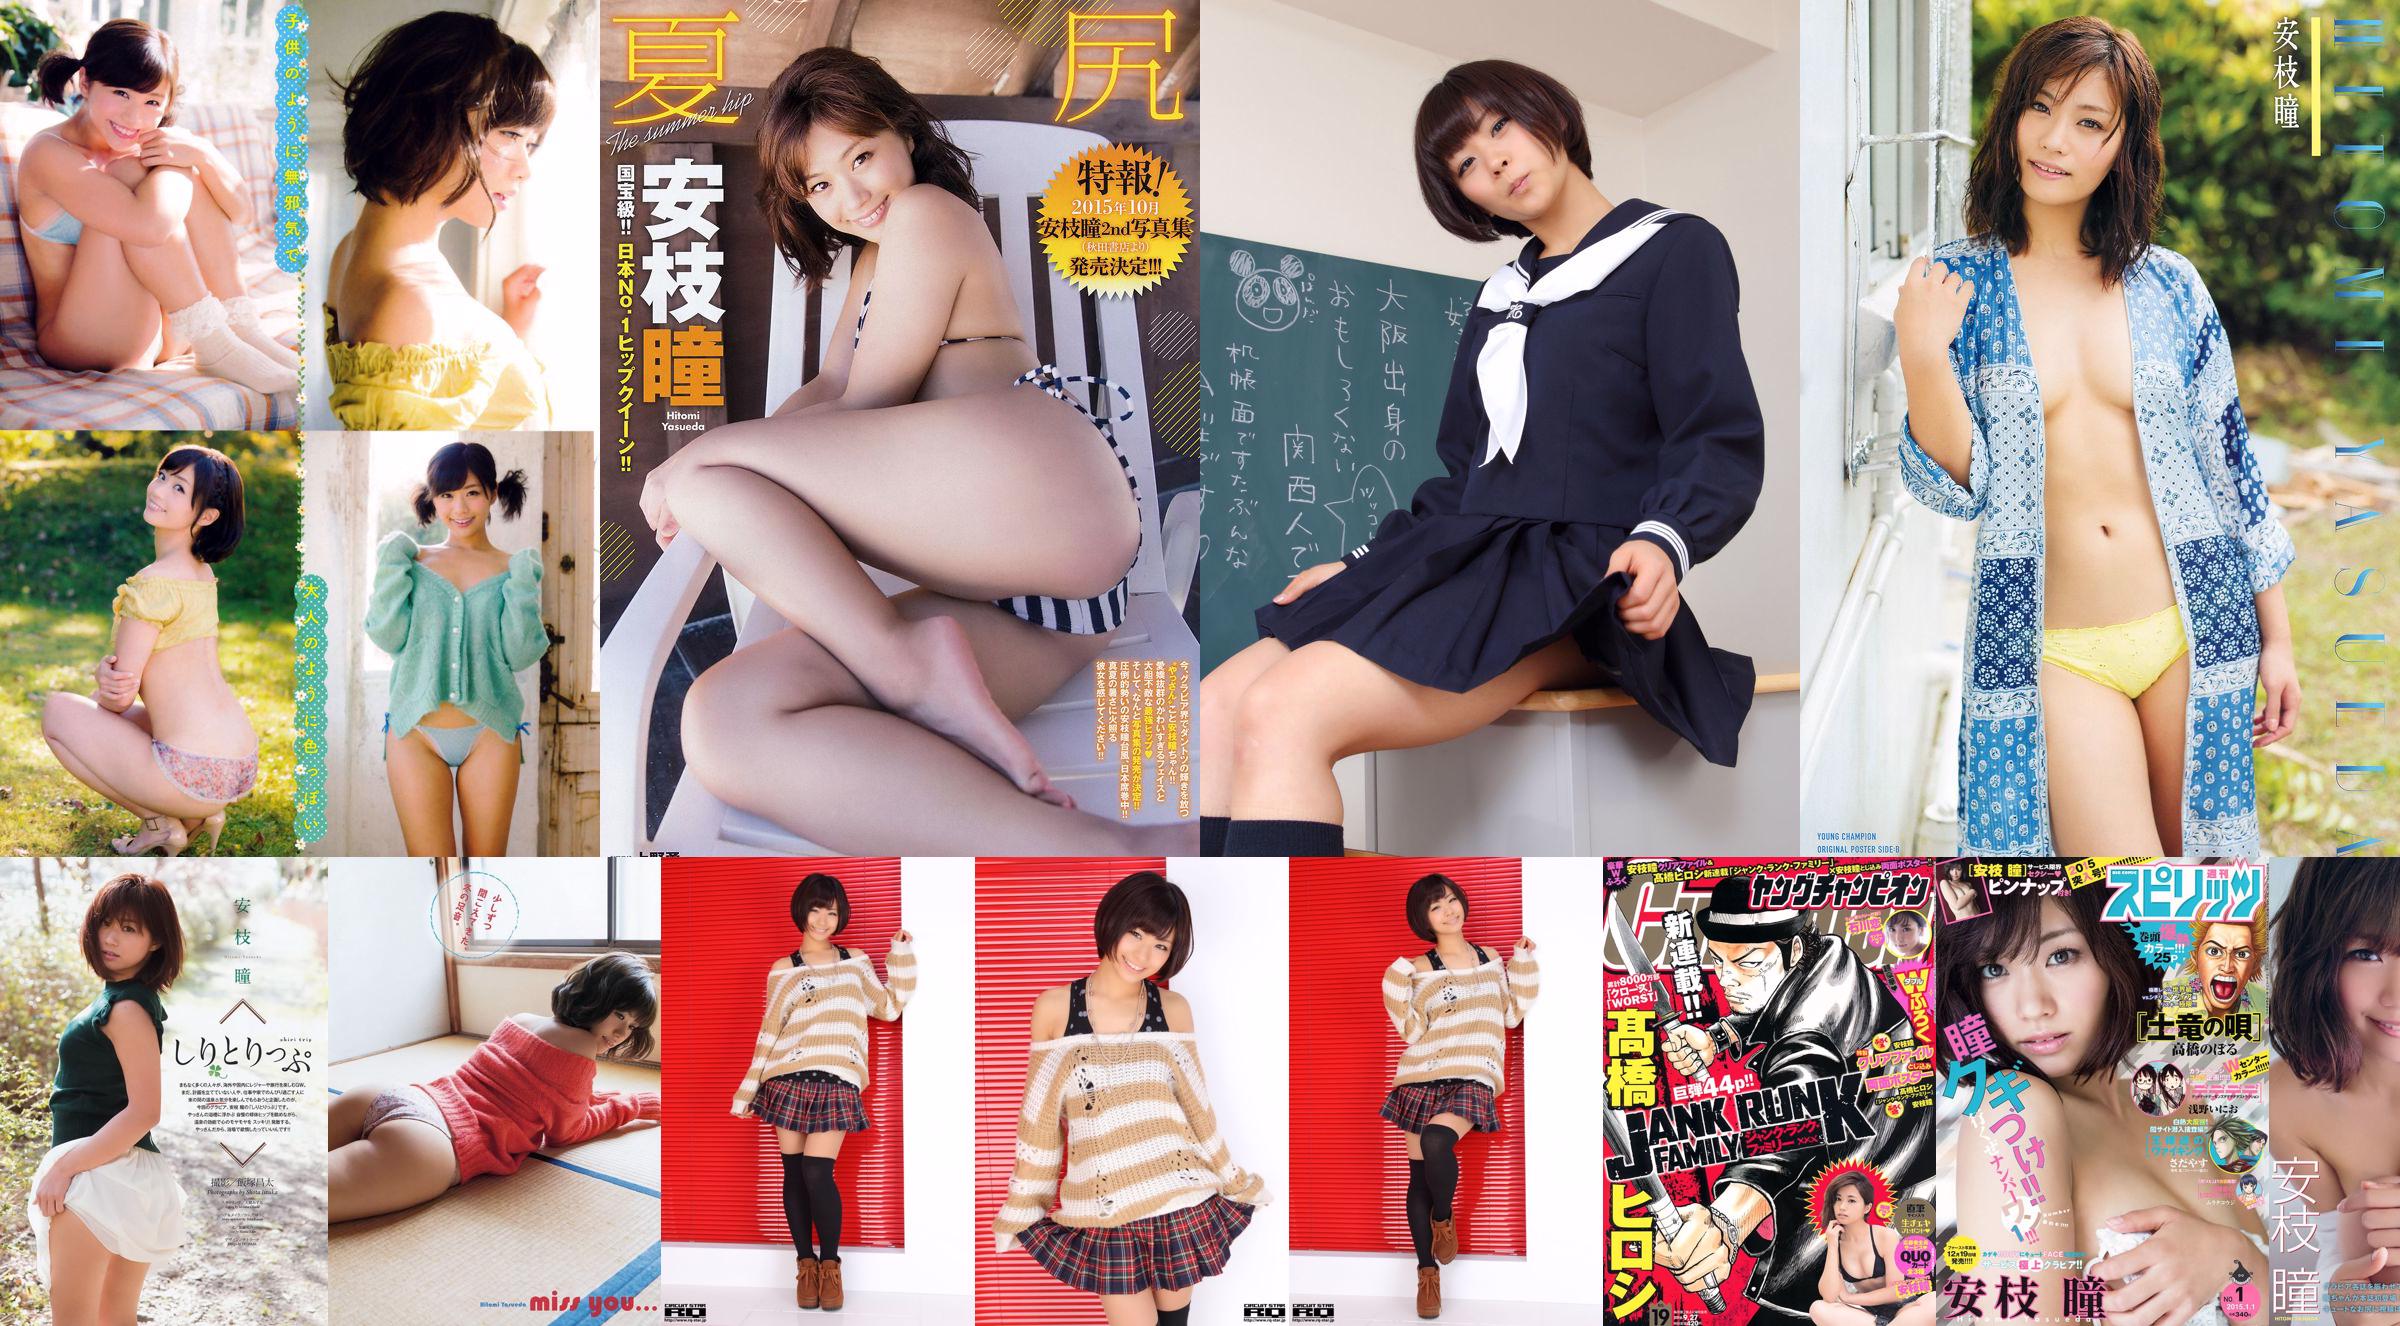 [Joven Campeona] Hitomi Anji y Yukaka Uno 2015 No.18 Photo Magazine No.622d13 Página 1